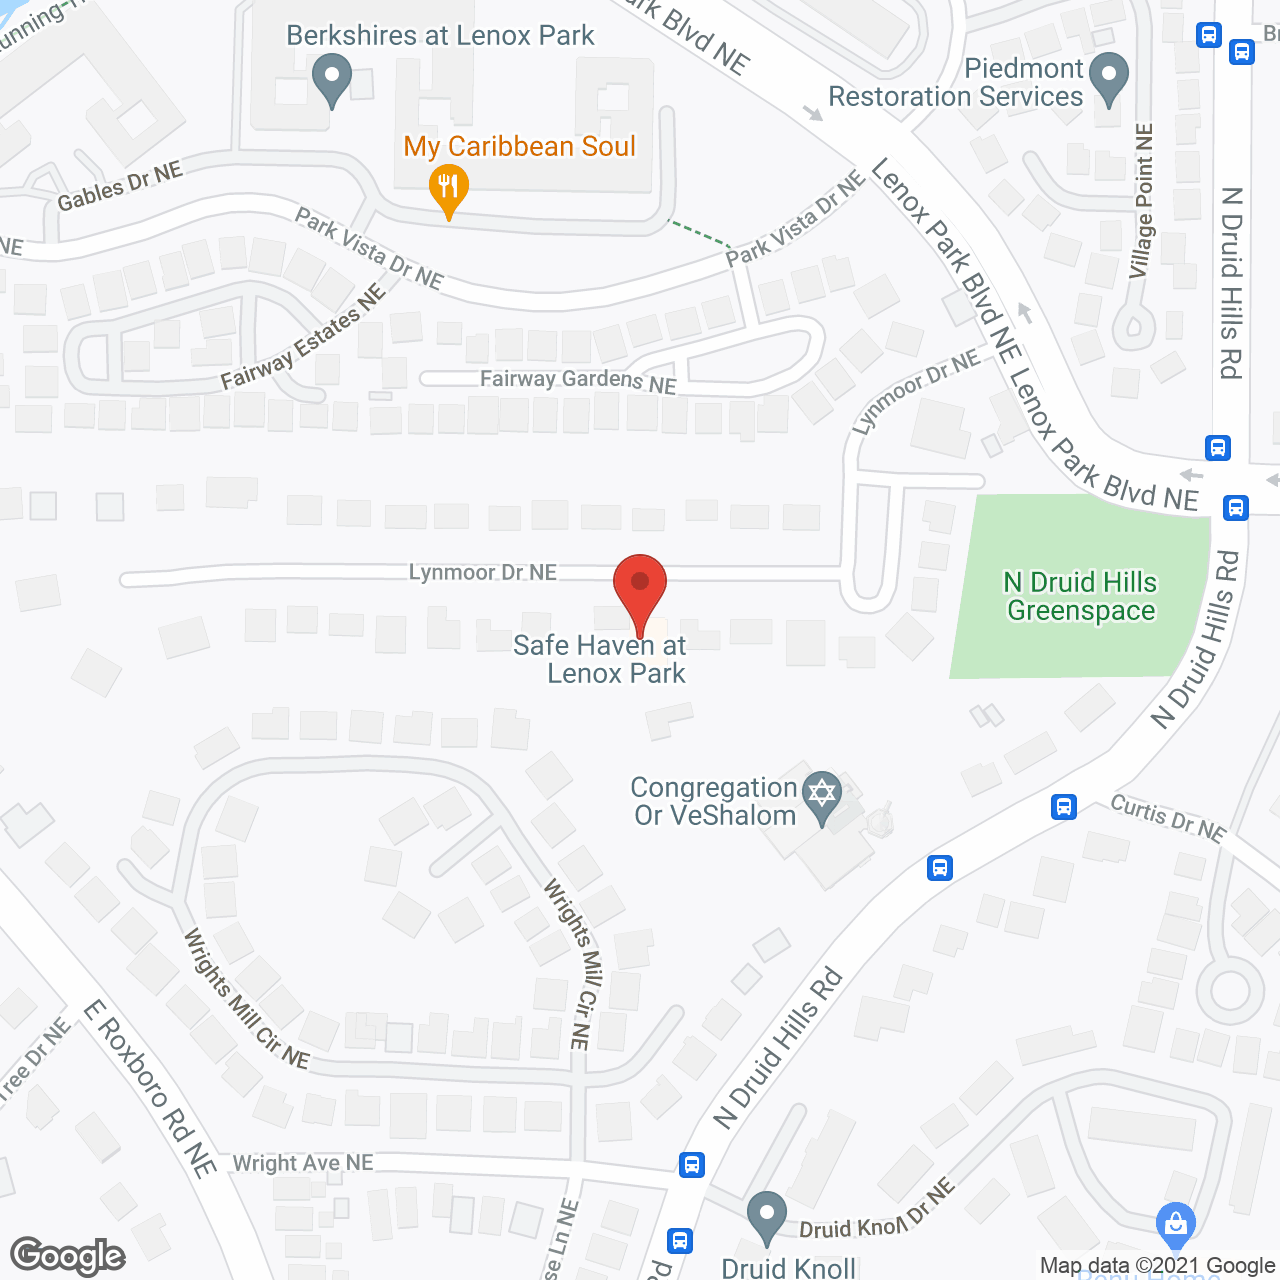 Safe Haven at Lenox Park in google map